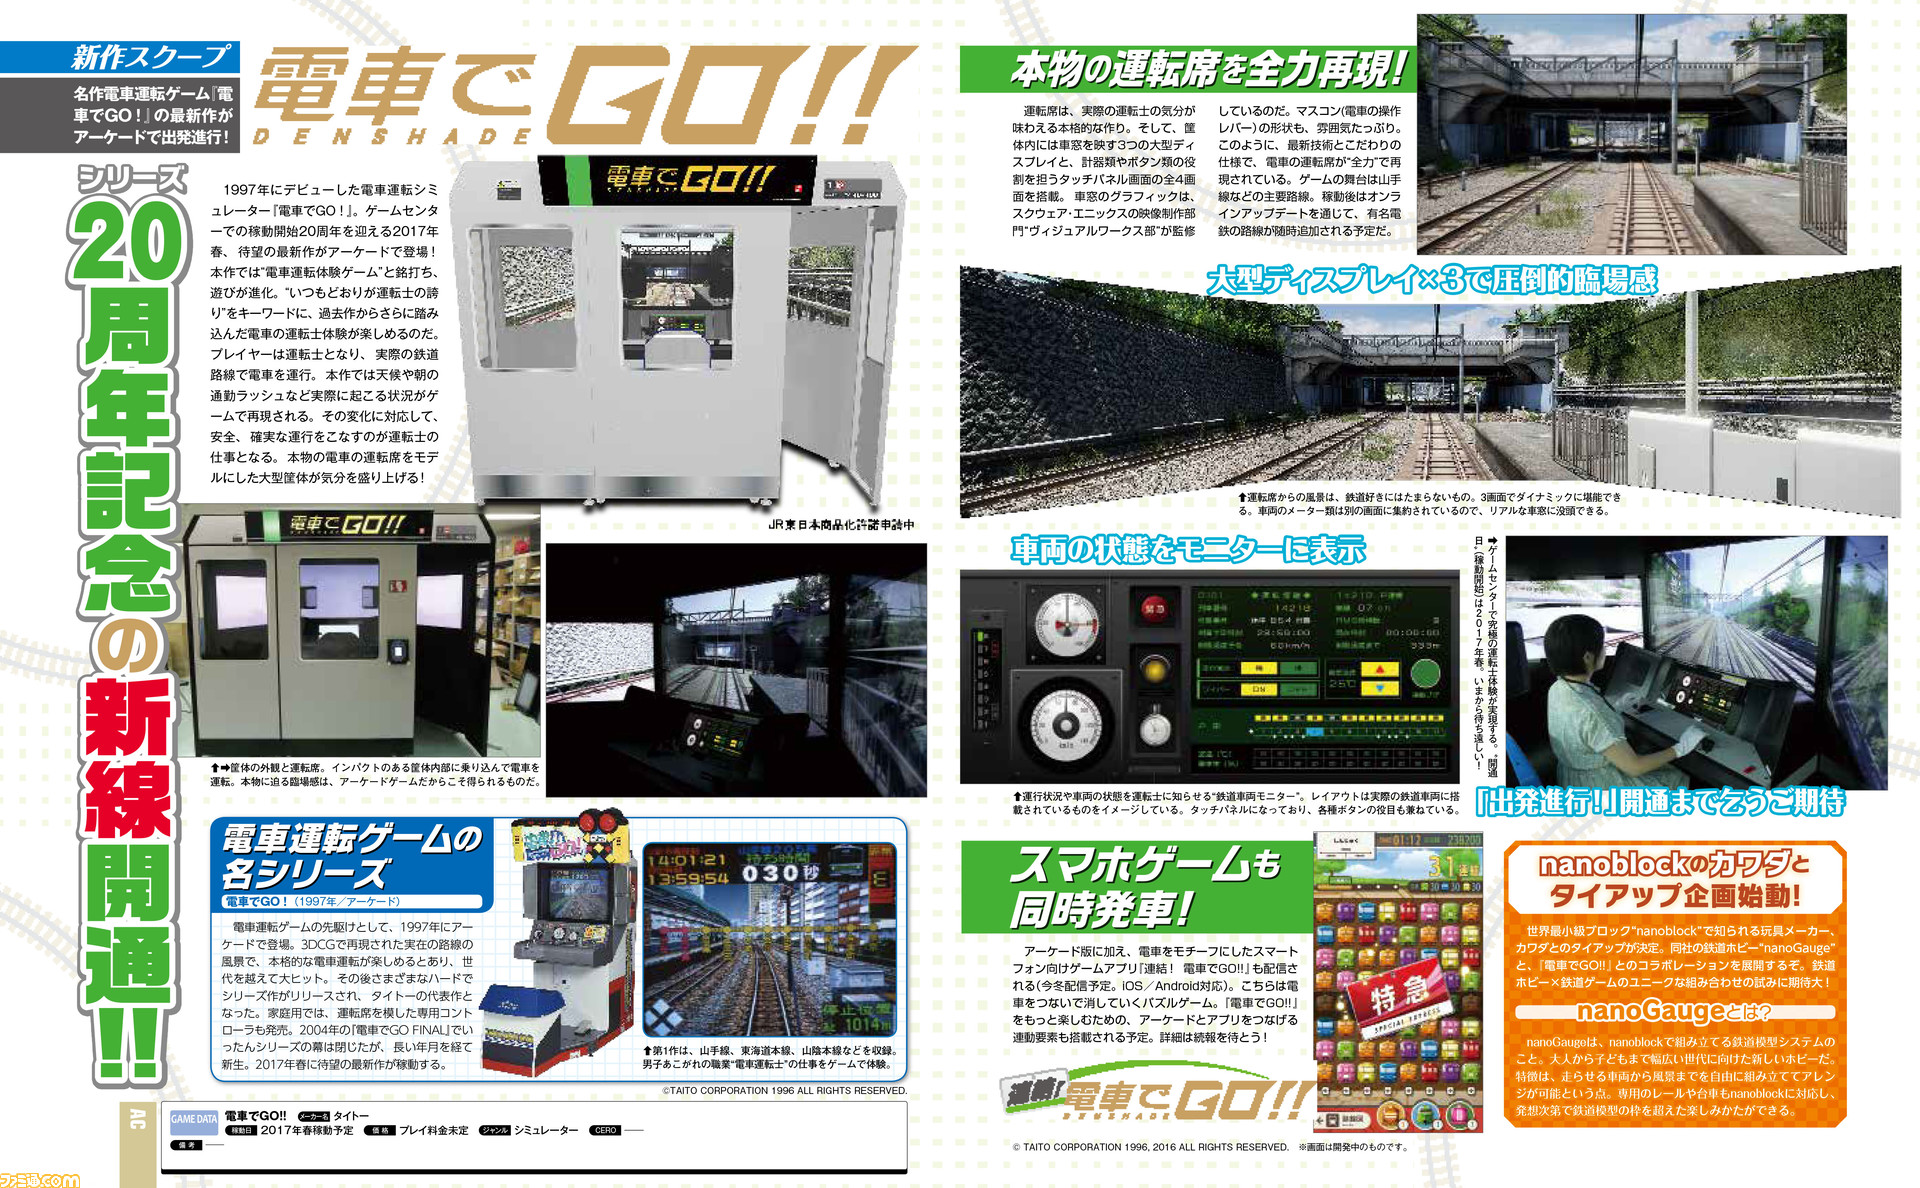 先出し週刊ファミ通 電車でgo 名作シリーズの最新作がアーケードで出発進行 16年8月18日発売号 ファミ通 Com